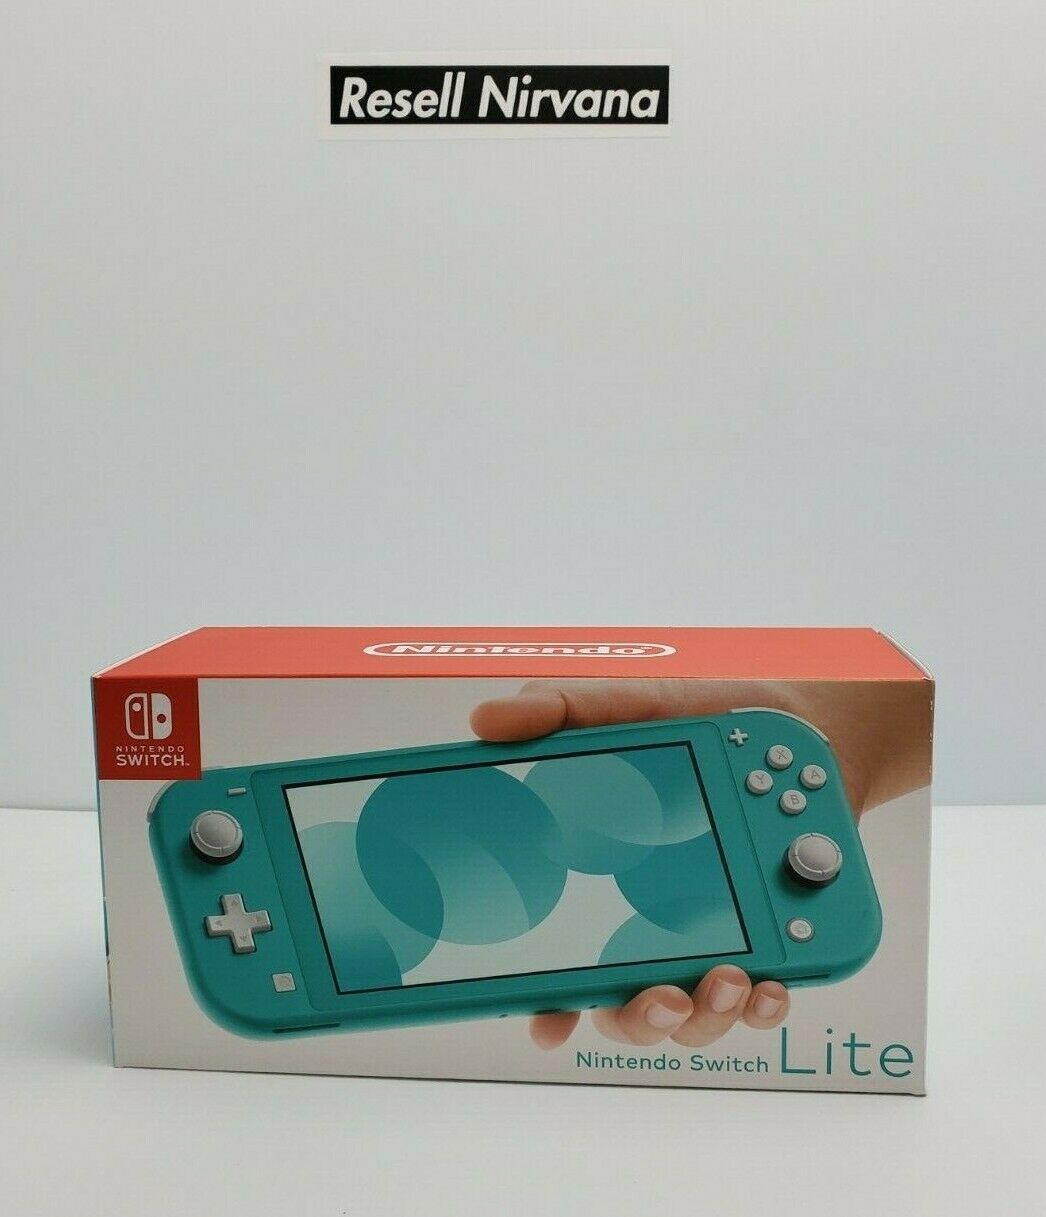 ◇新品未開封 Nintendo Switch Lite ターコイズブルーの+spbgp44.ru